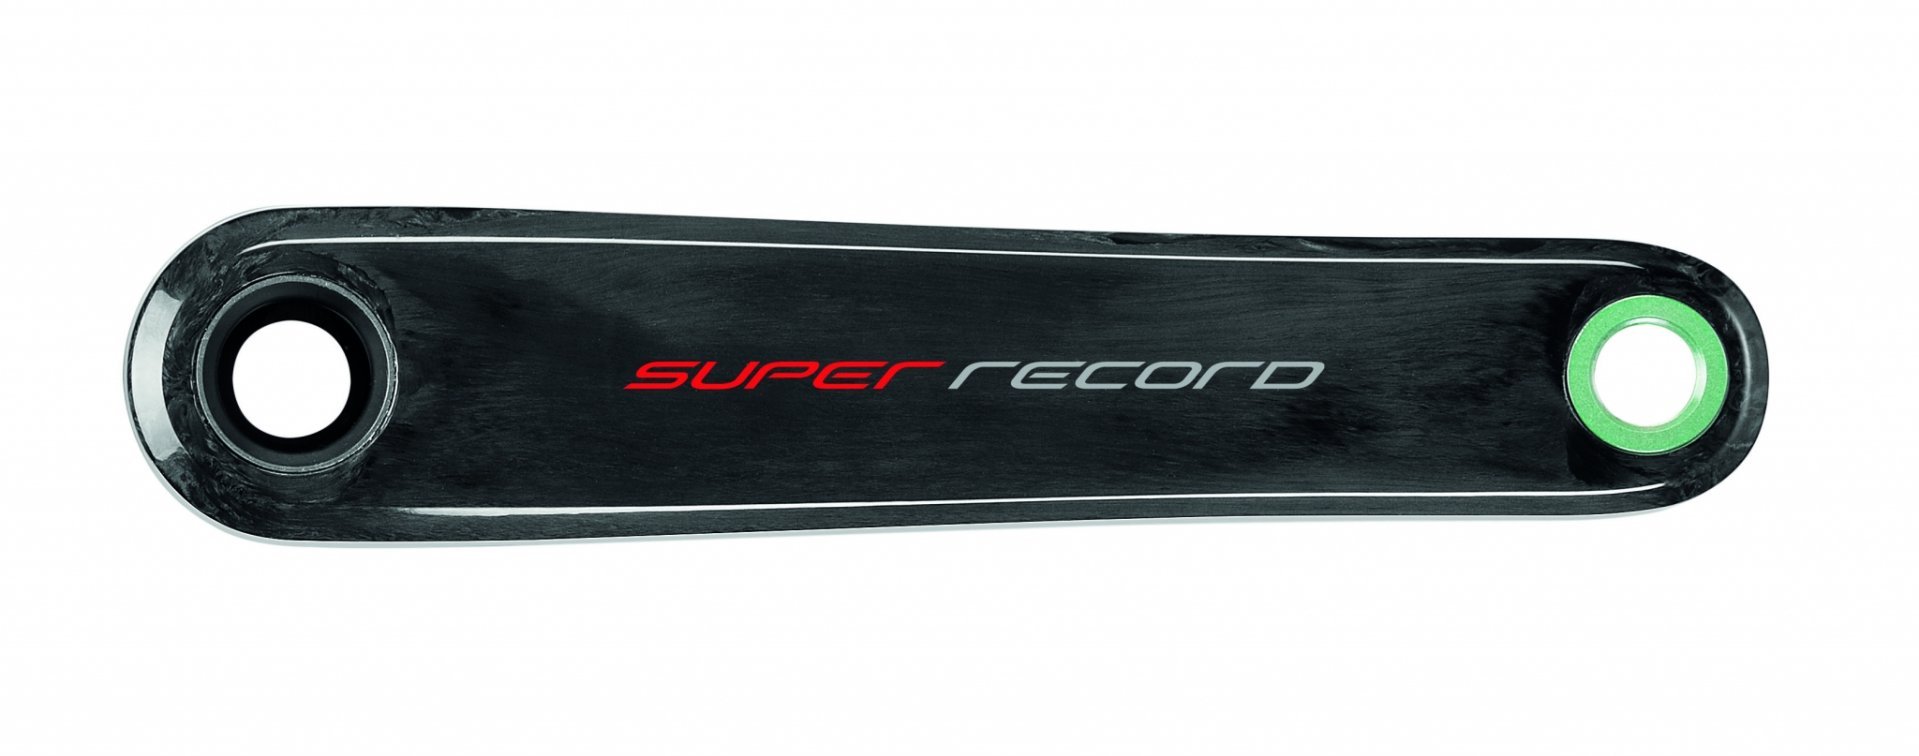 The Campagnolo Super Record 12-speed crankarm.